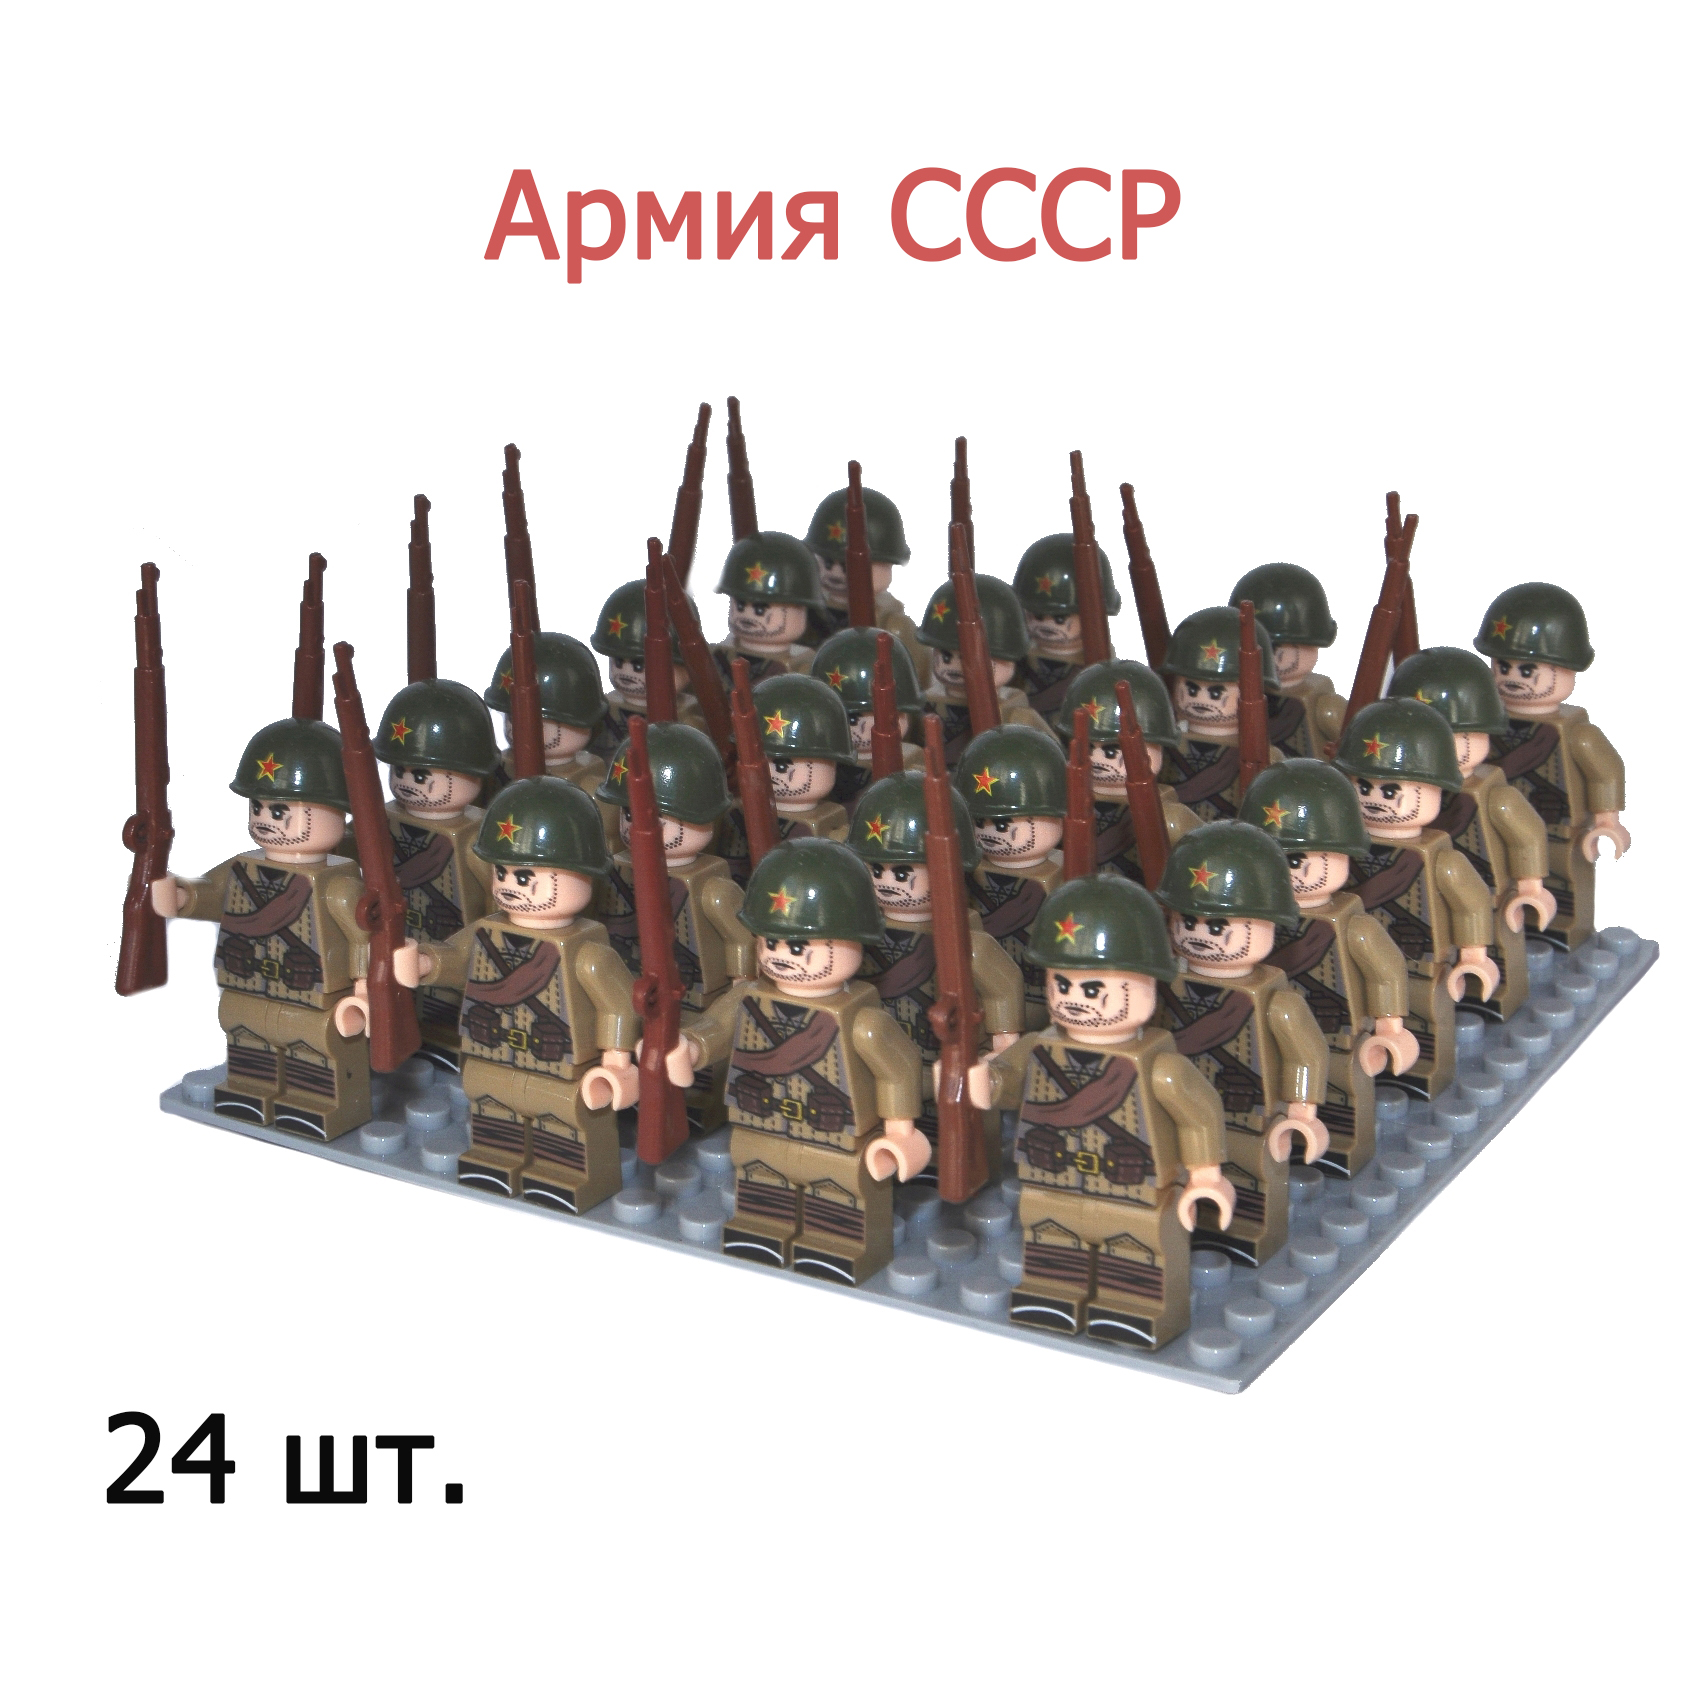 Армия СССР-6. 24 фигурки солдатиков с оружием времен ВОВ, конструктор для мальчиков.